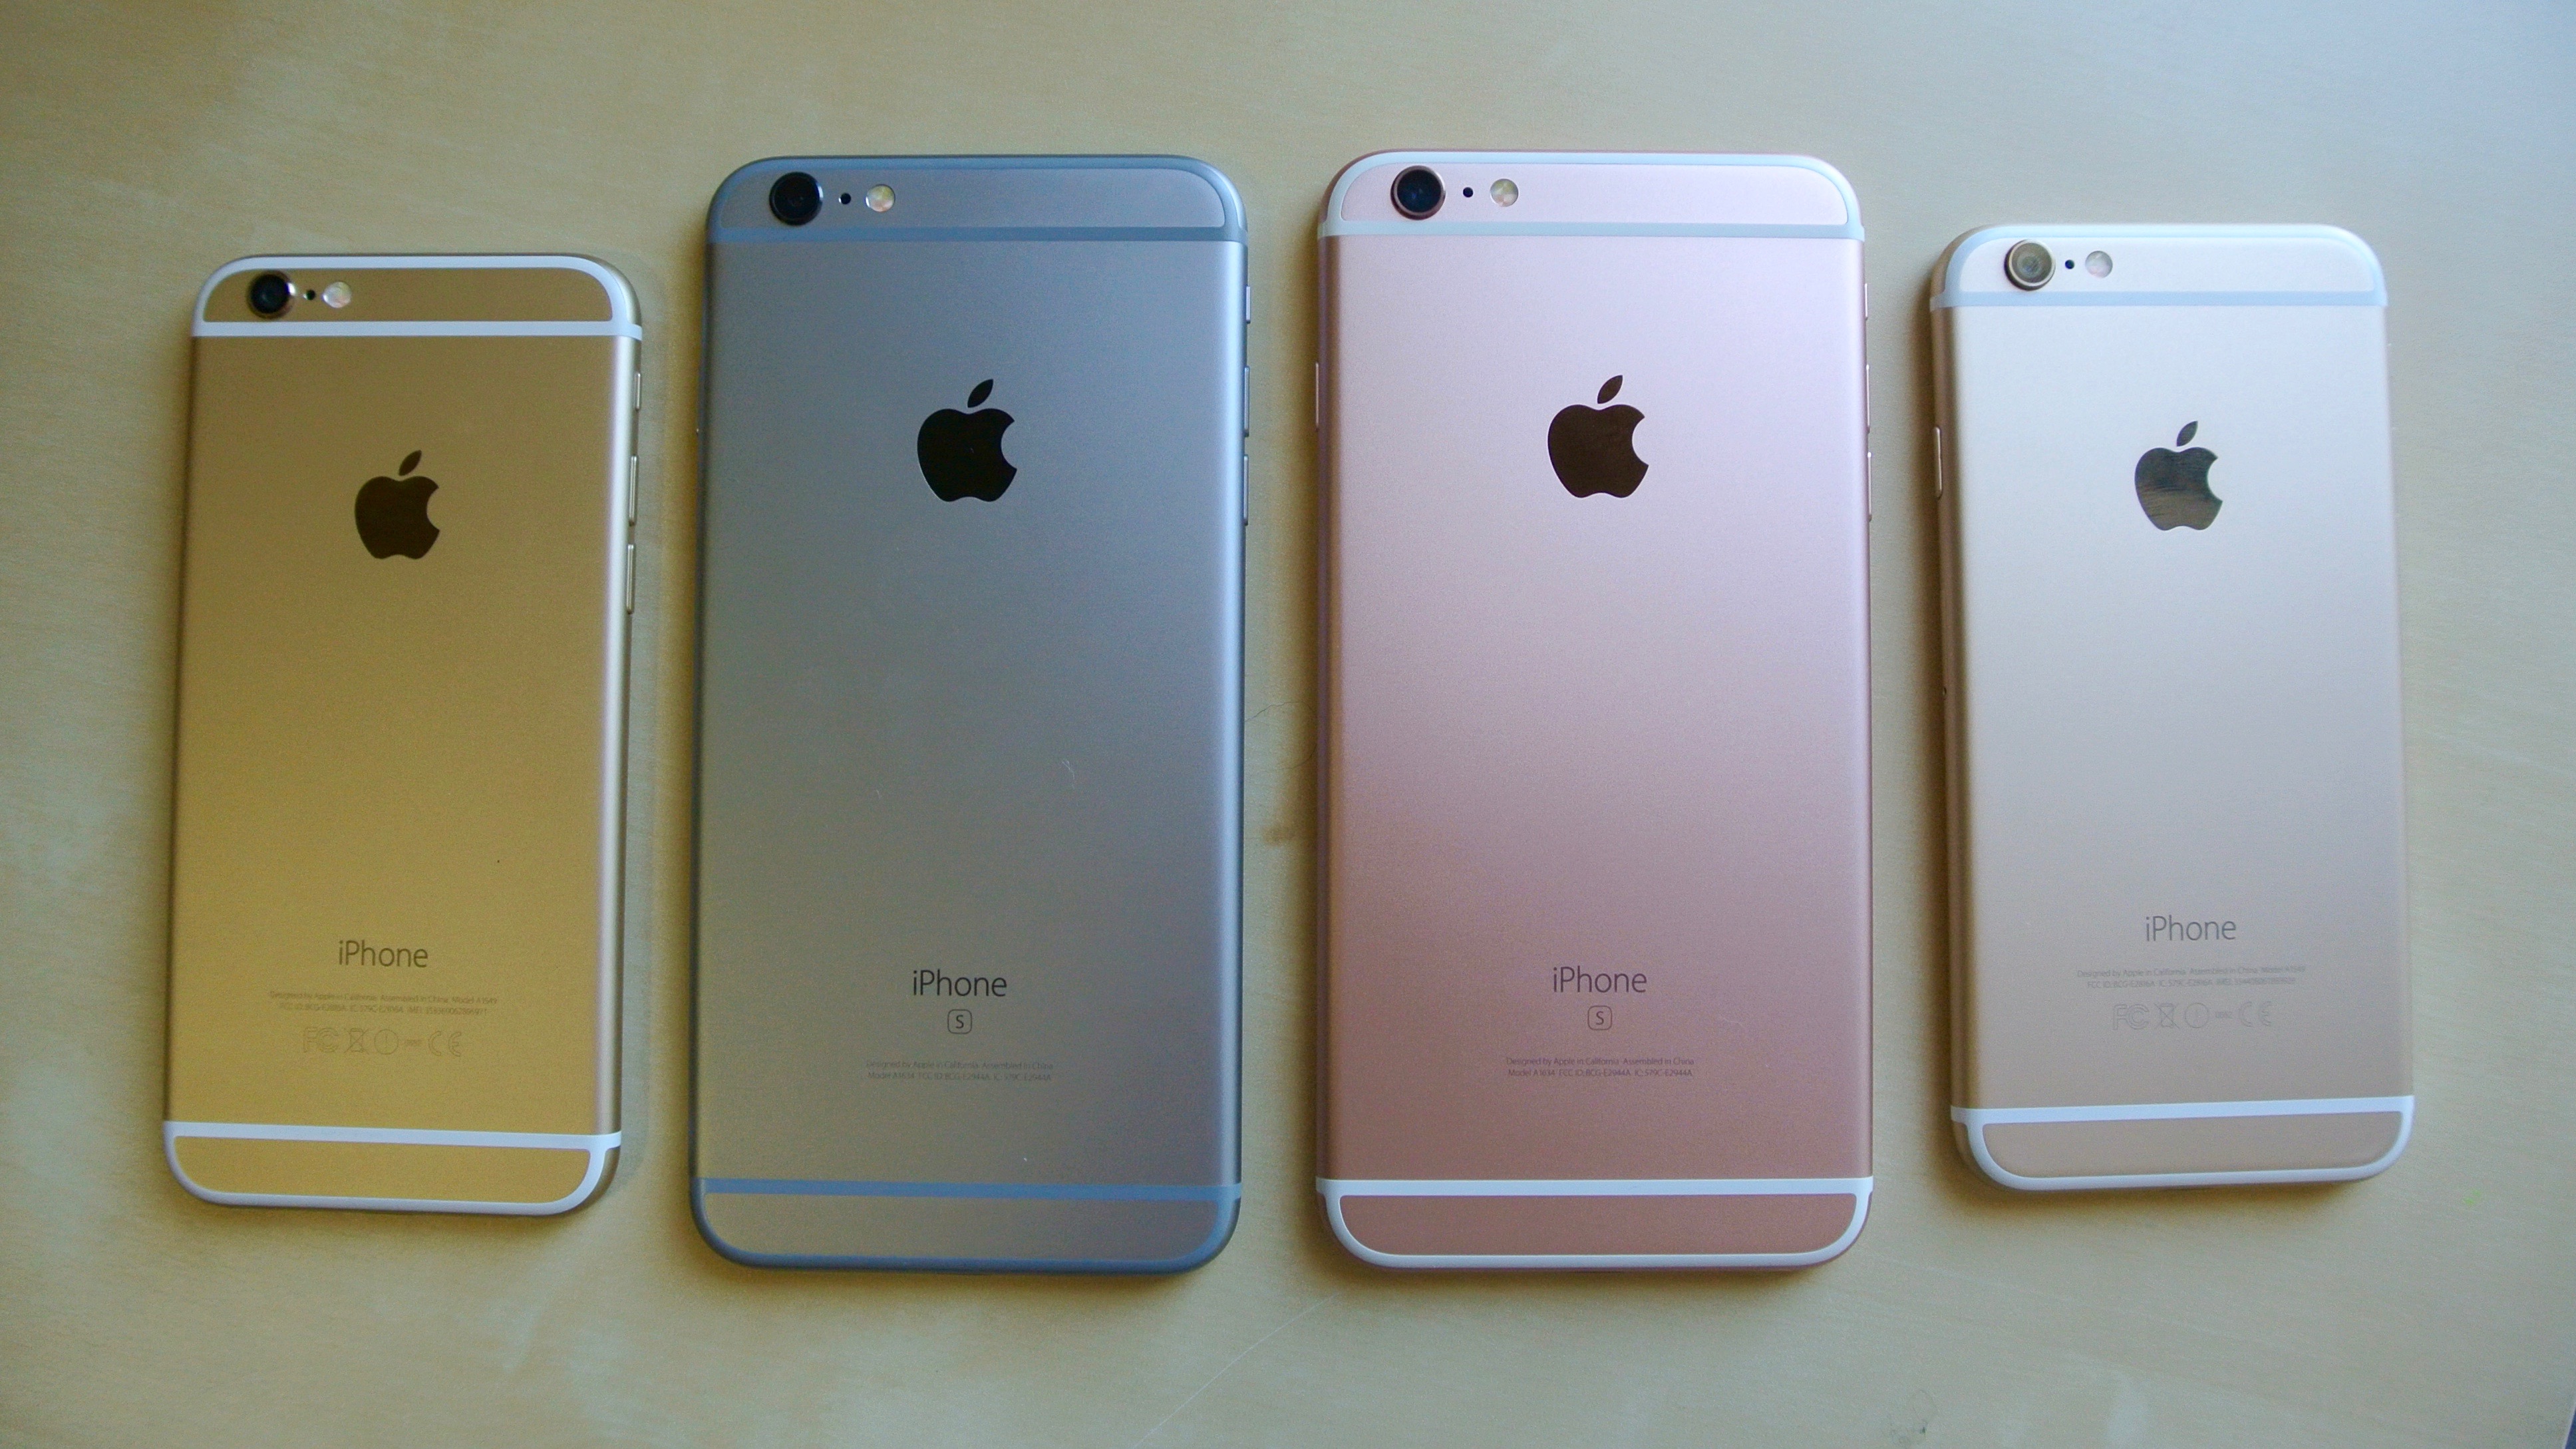 iPhone 6, iPhone 6s Plus